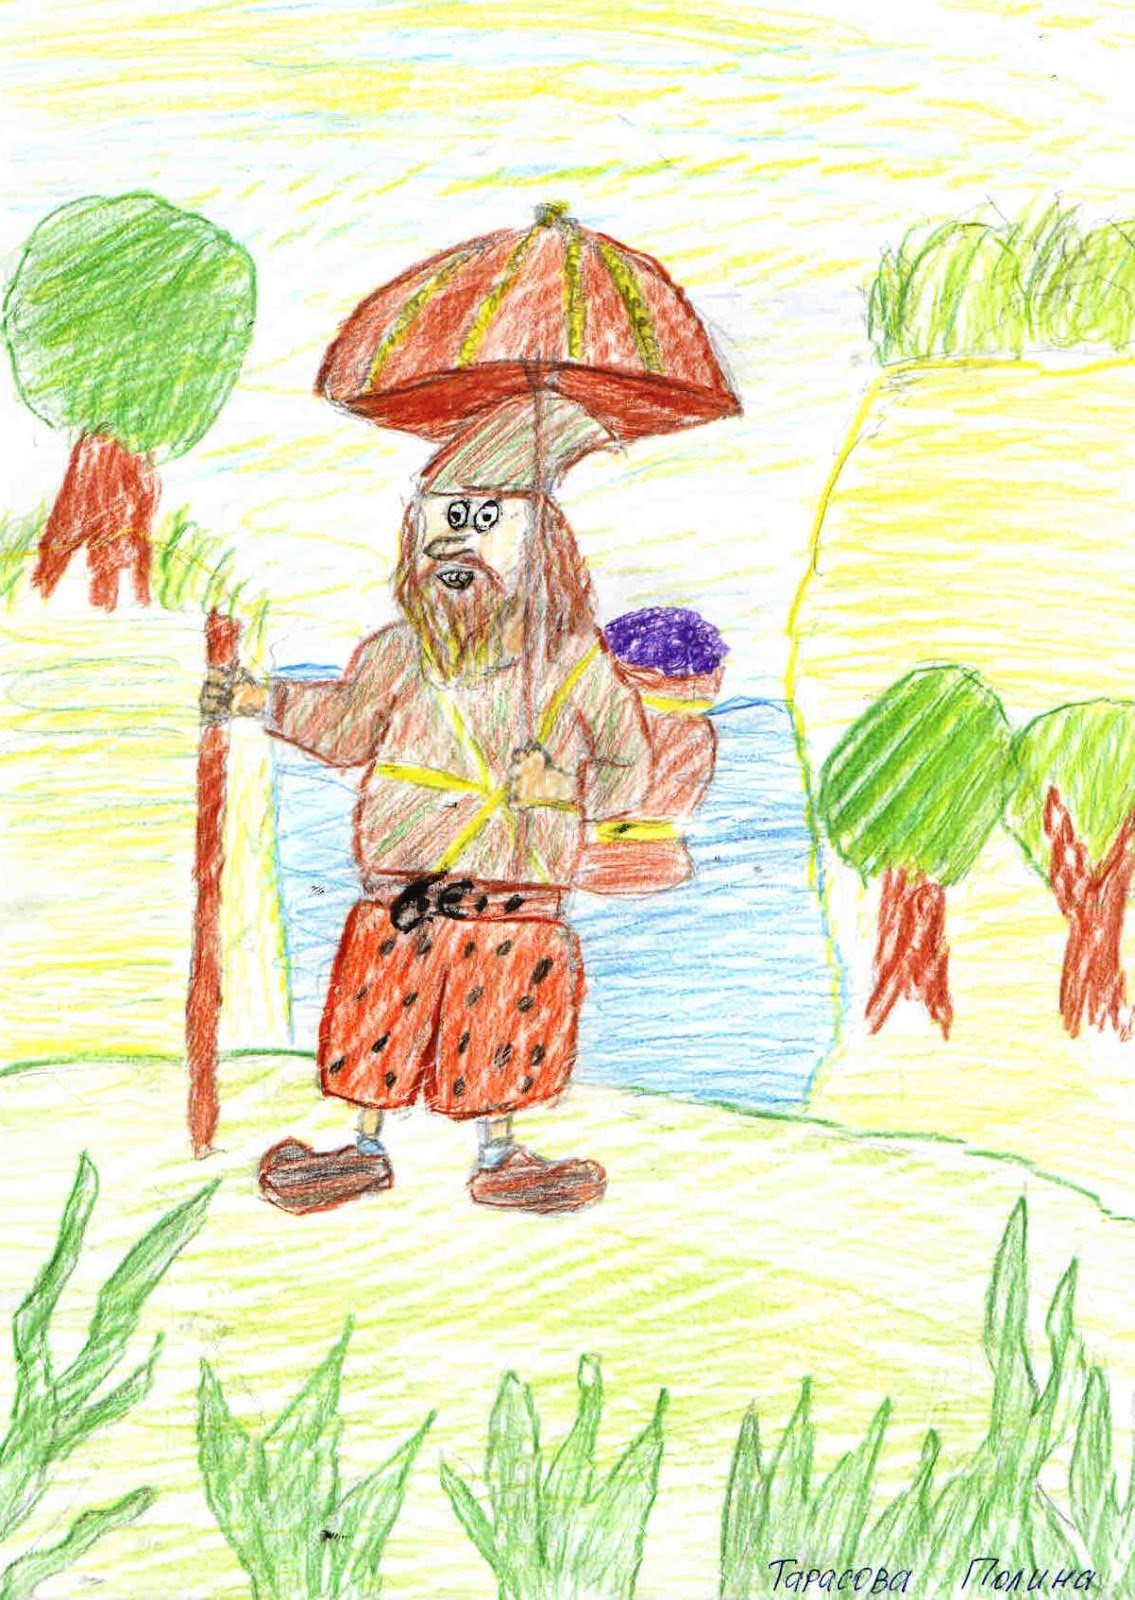 Робинзон крузо рисунок 5. Робинзон Крузо рисунок. Иллюстрация к рассказу Робинзон Крузо. Иллюстразияк рассказу Робинзон Крузо. Илюстрация к рассказу "Робинзон Крузо".